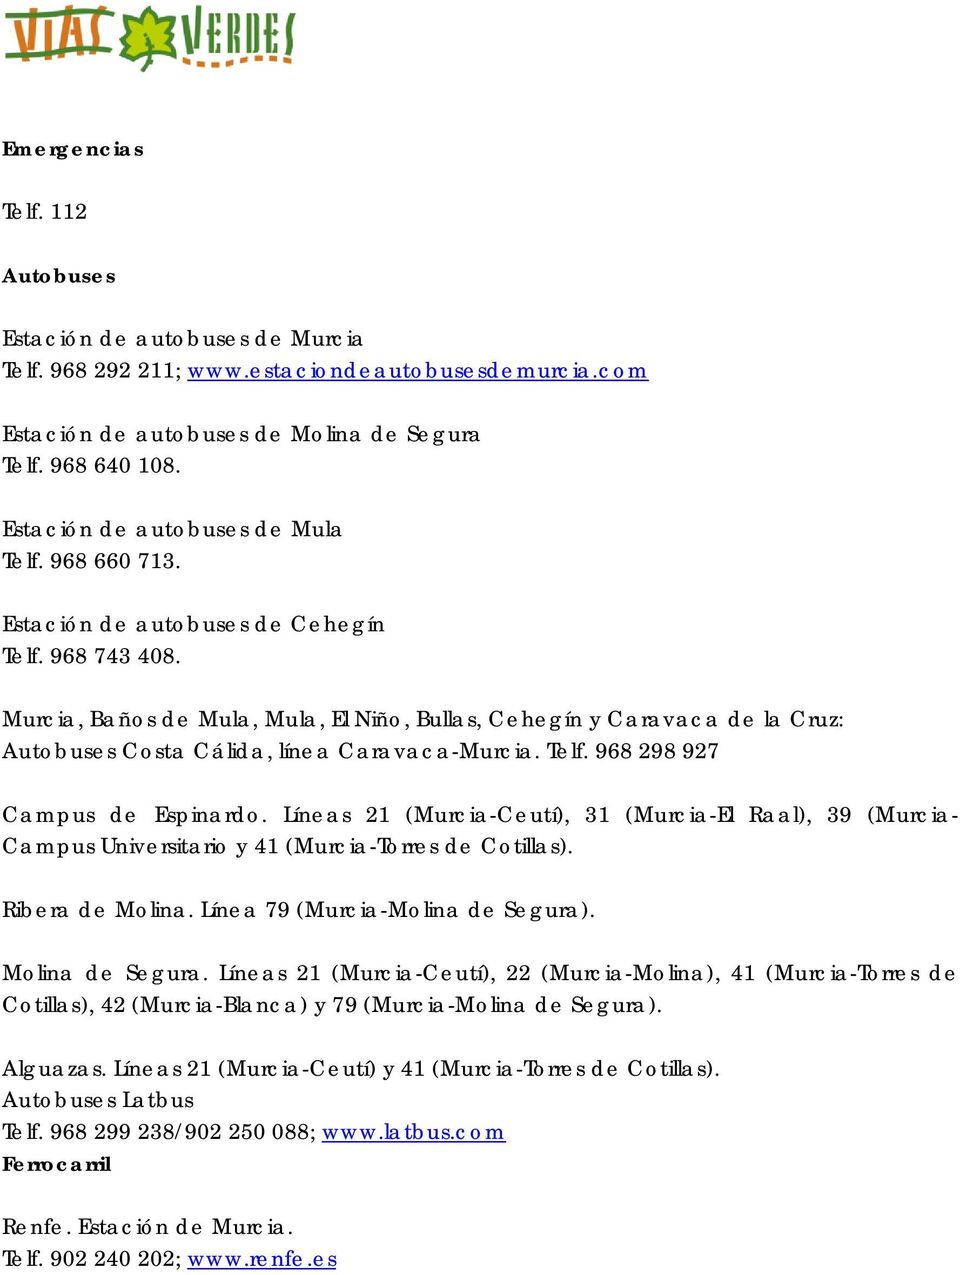 Murcia, Baños de Mula, Mula, El Niño, Bullas, Cehegín y Caravaca de la Cruz: Autobuses Costa Cálida, línea Caravaca-Murcia. Telf. 968 298 927 Campus de Espinardo.